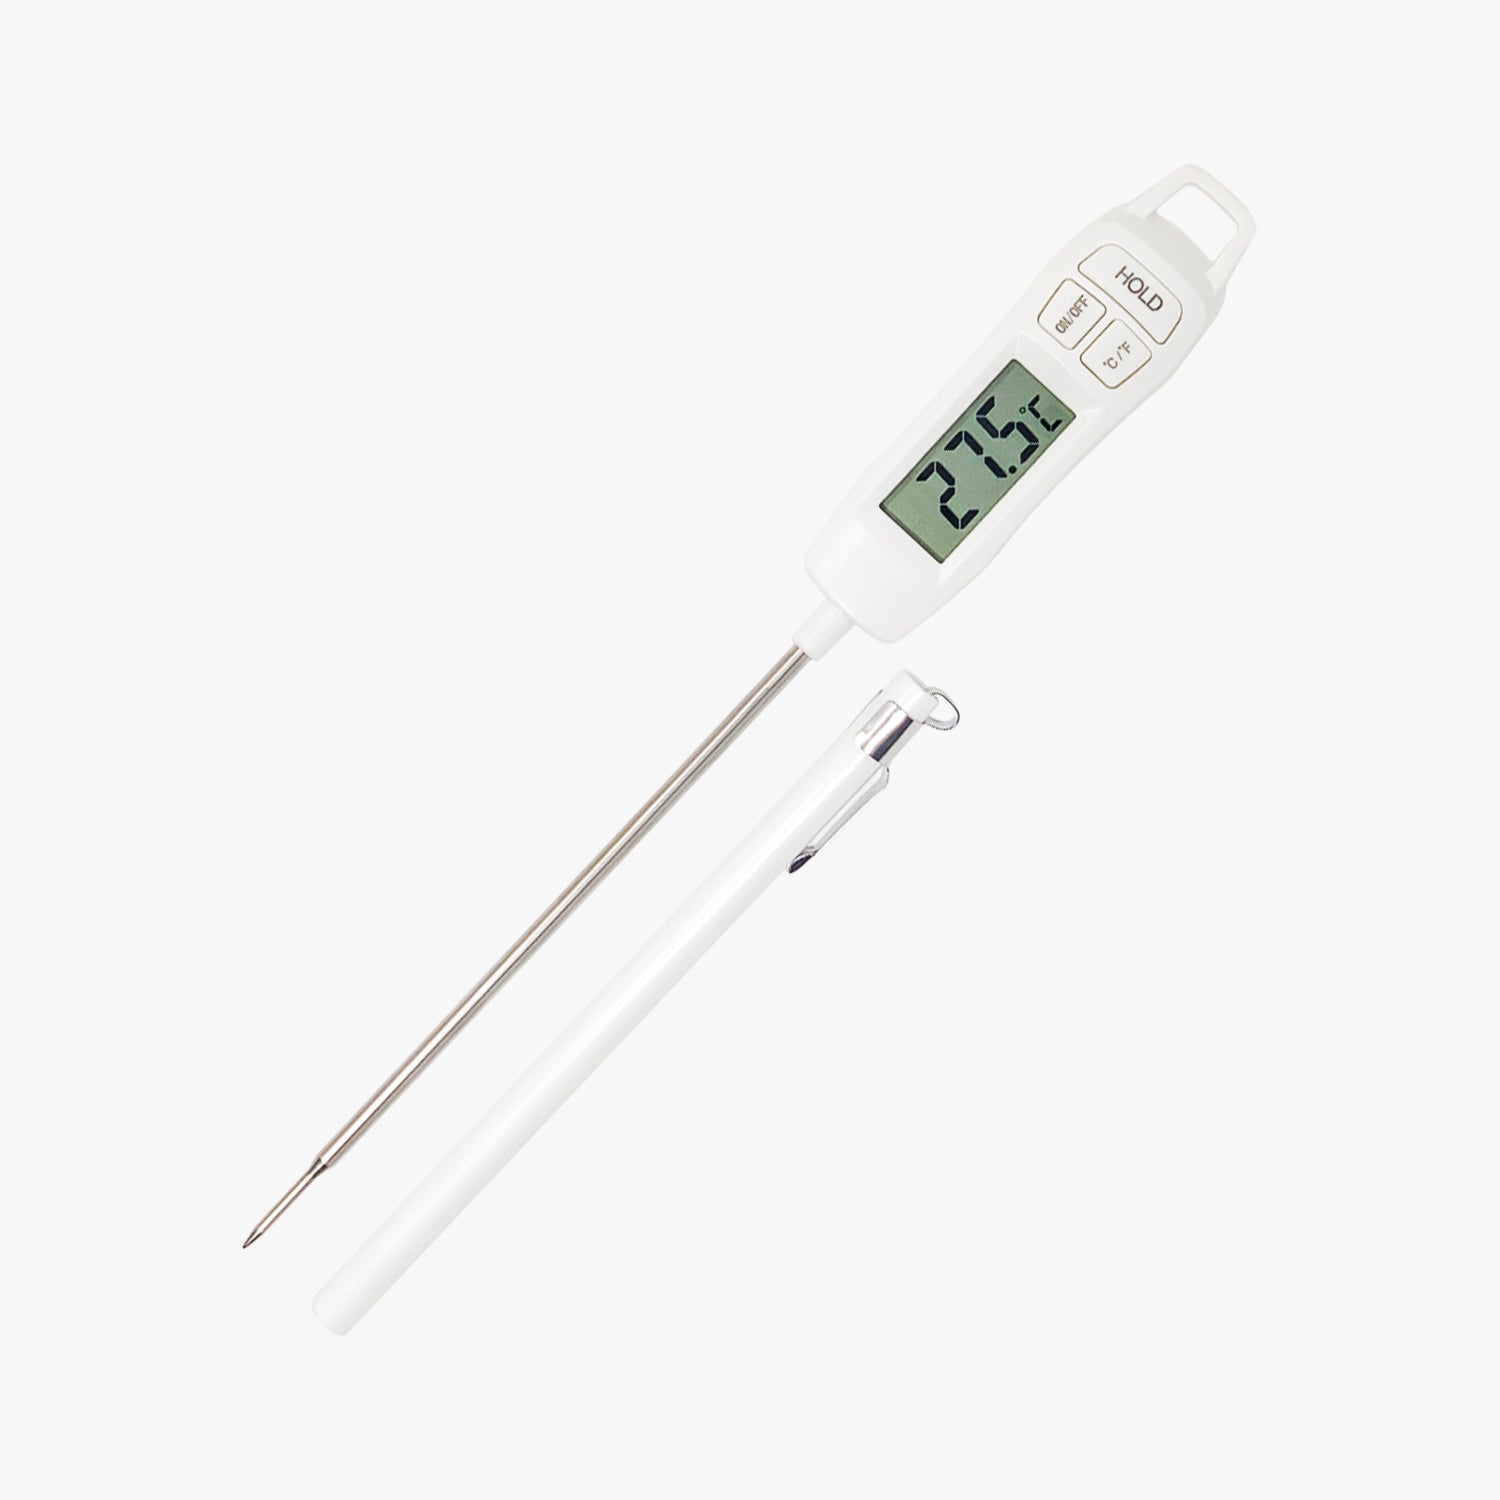 Termometro da cucina, Termometro digitale